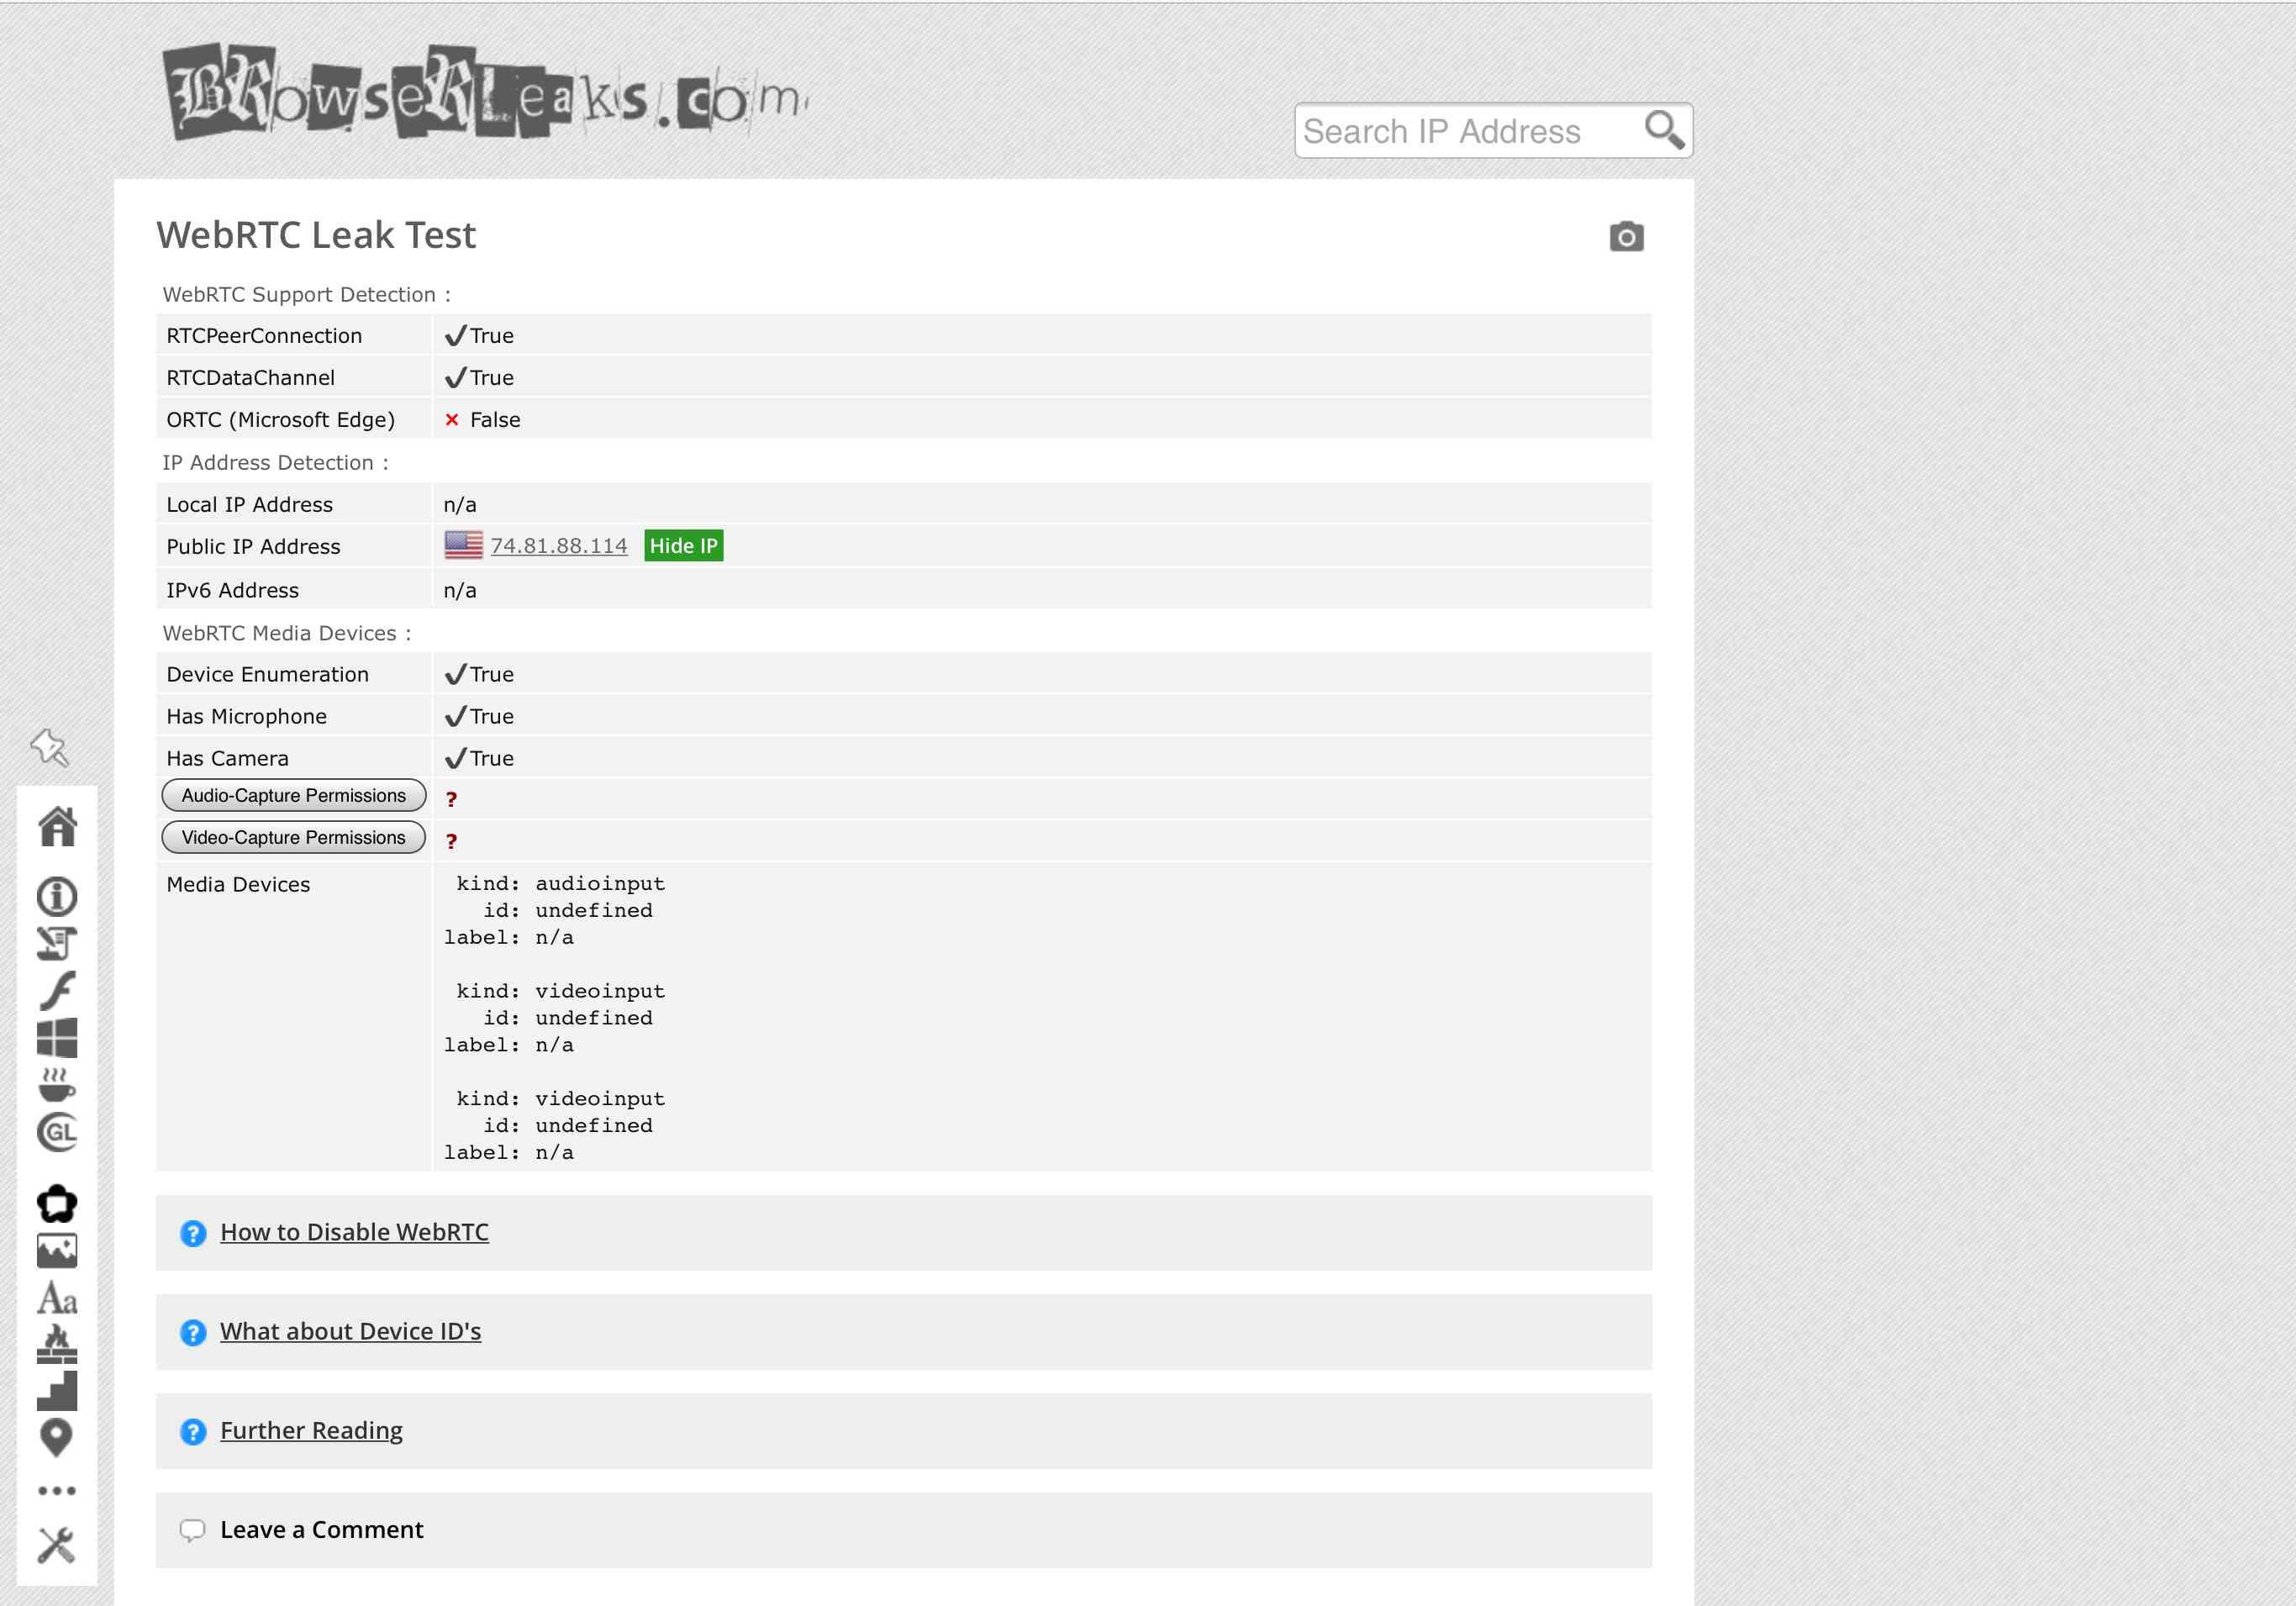 Снимок экрана теста BrowserLeaks.com/WebRTC, на котором показаны пять элементов